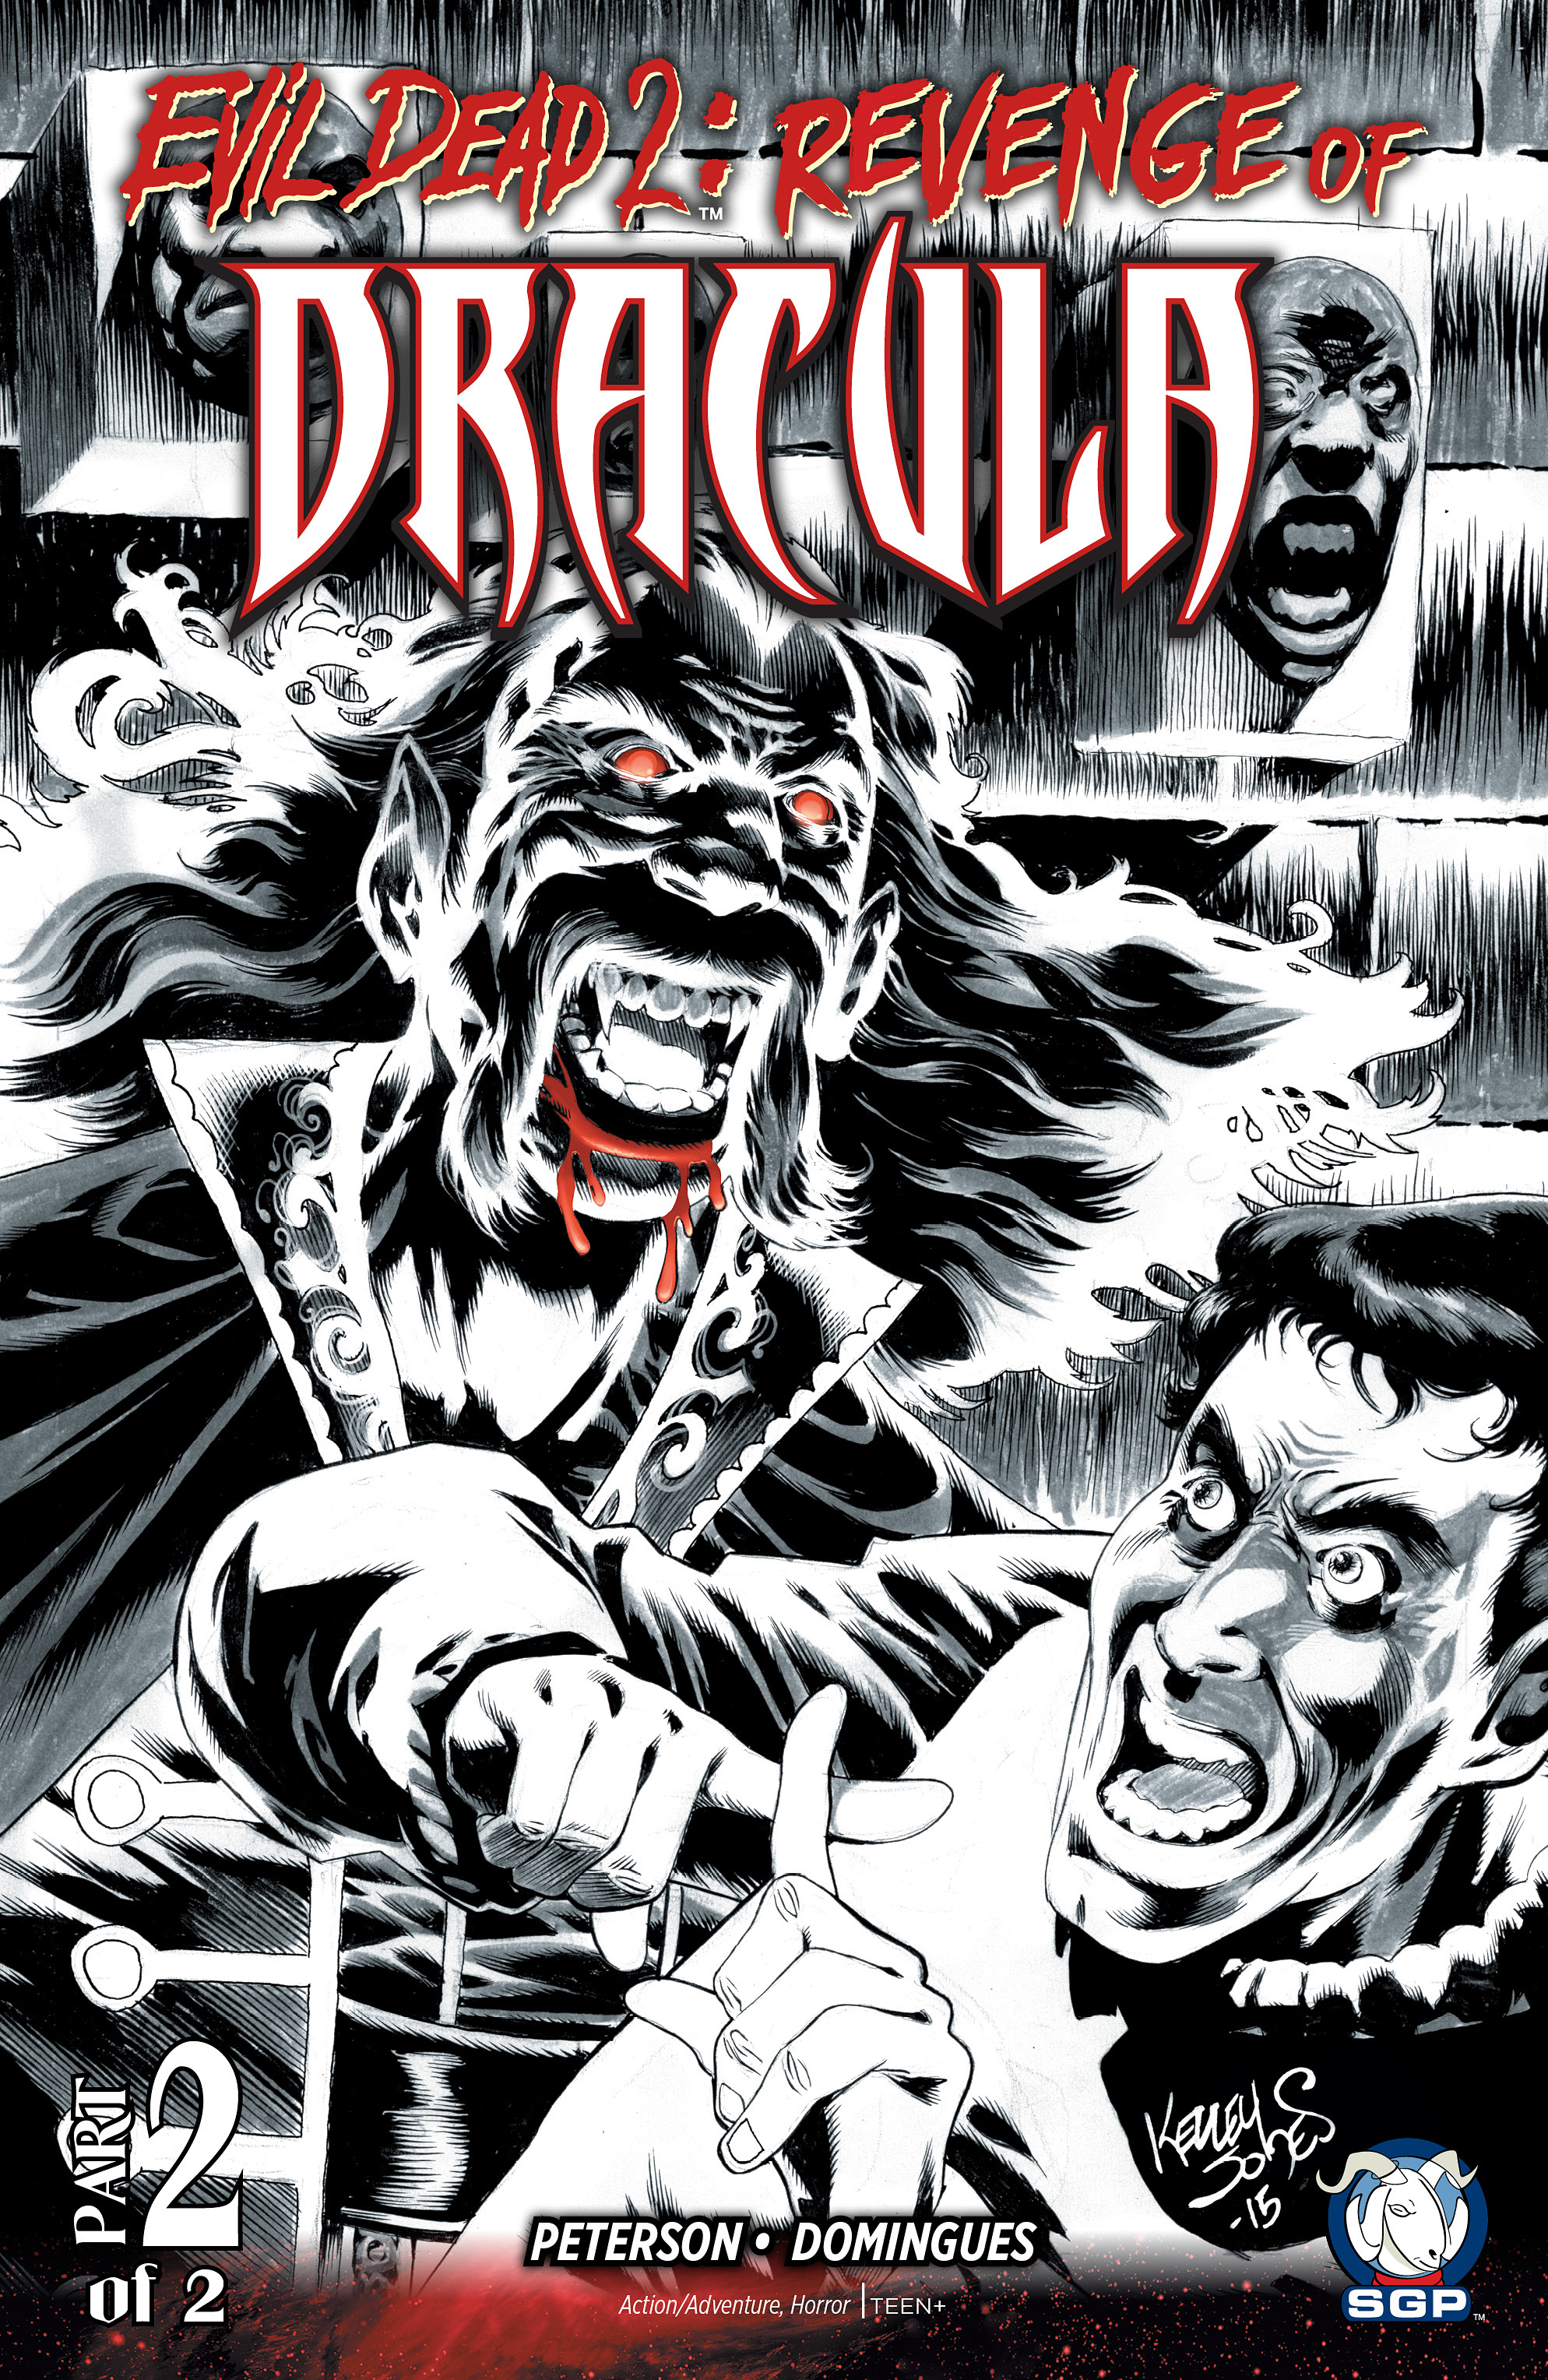 Read online Evil Dead 2: Revenge of Dracula comic -  Issue #2 - 1